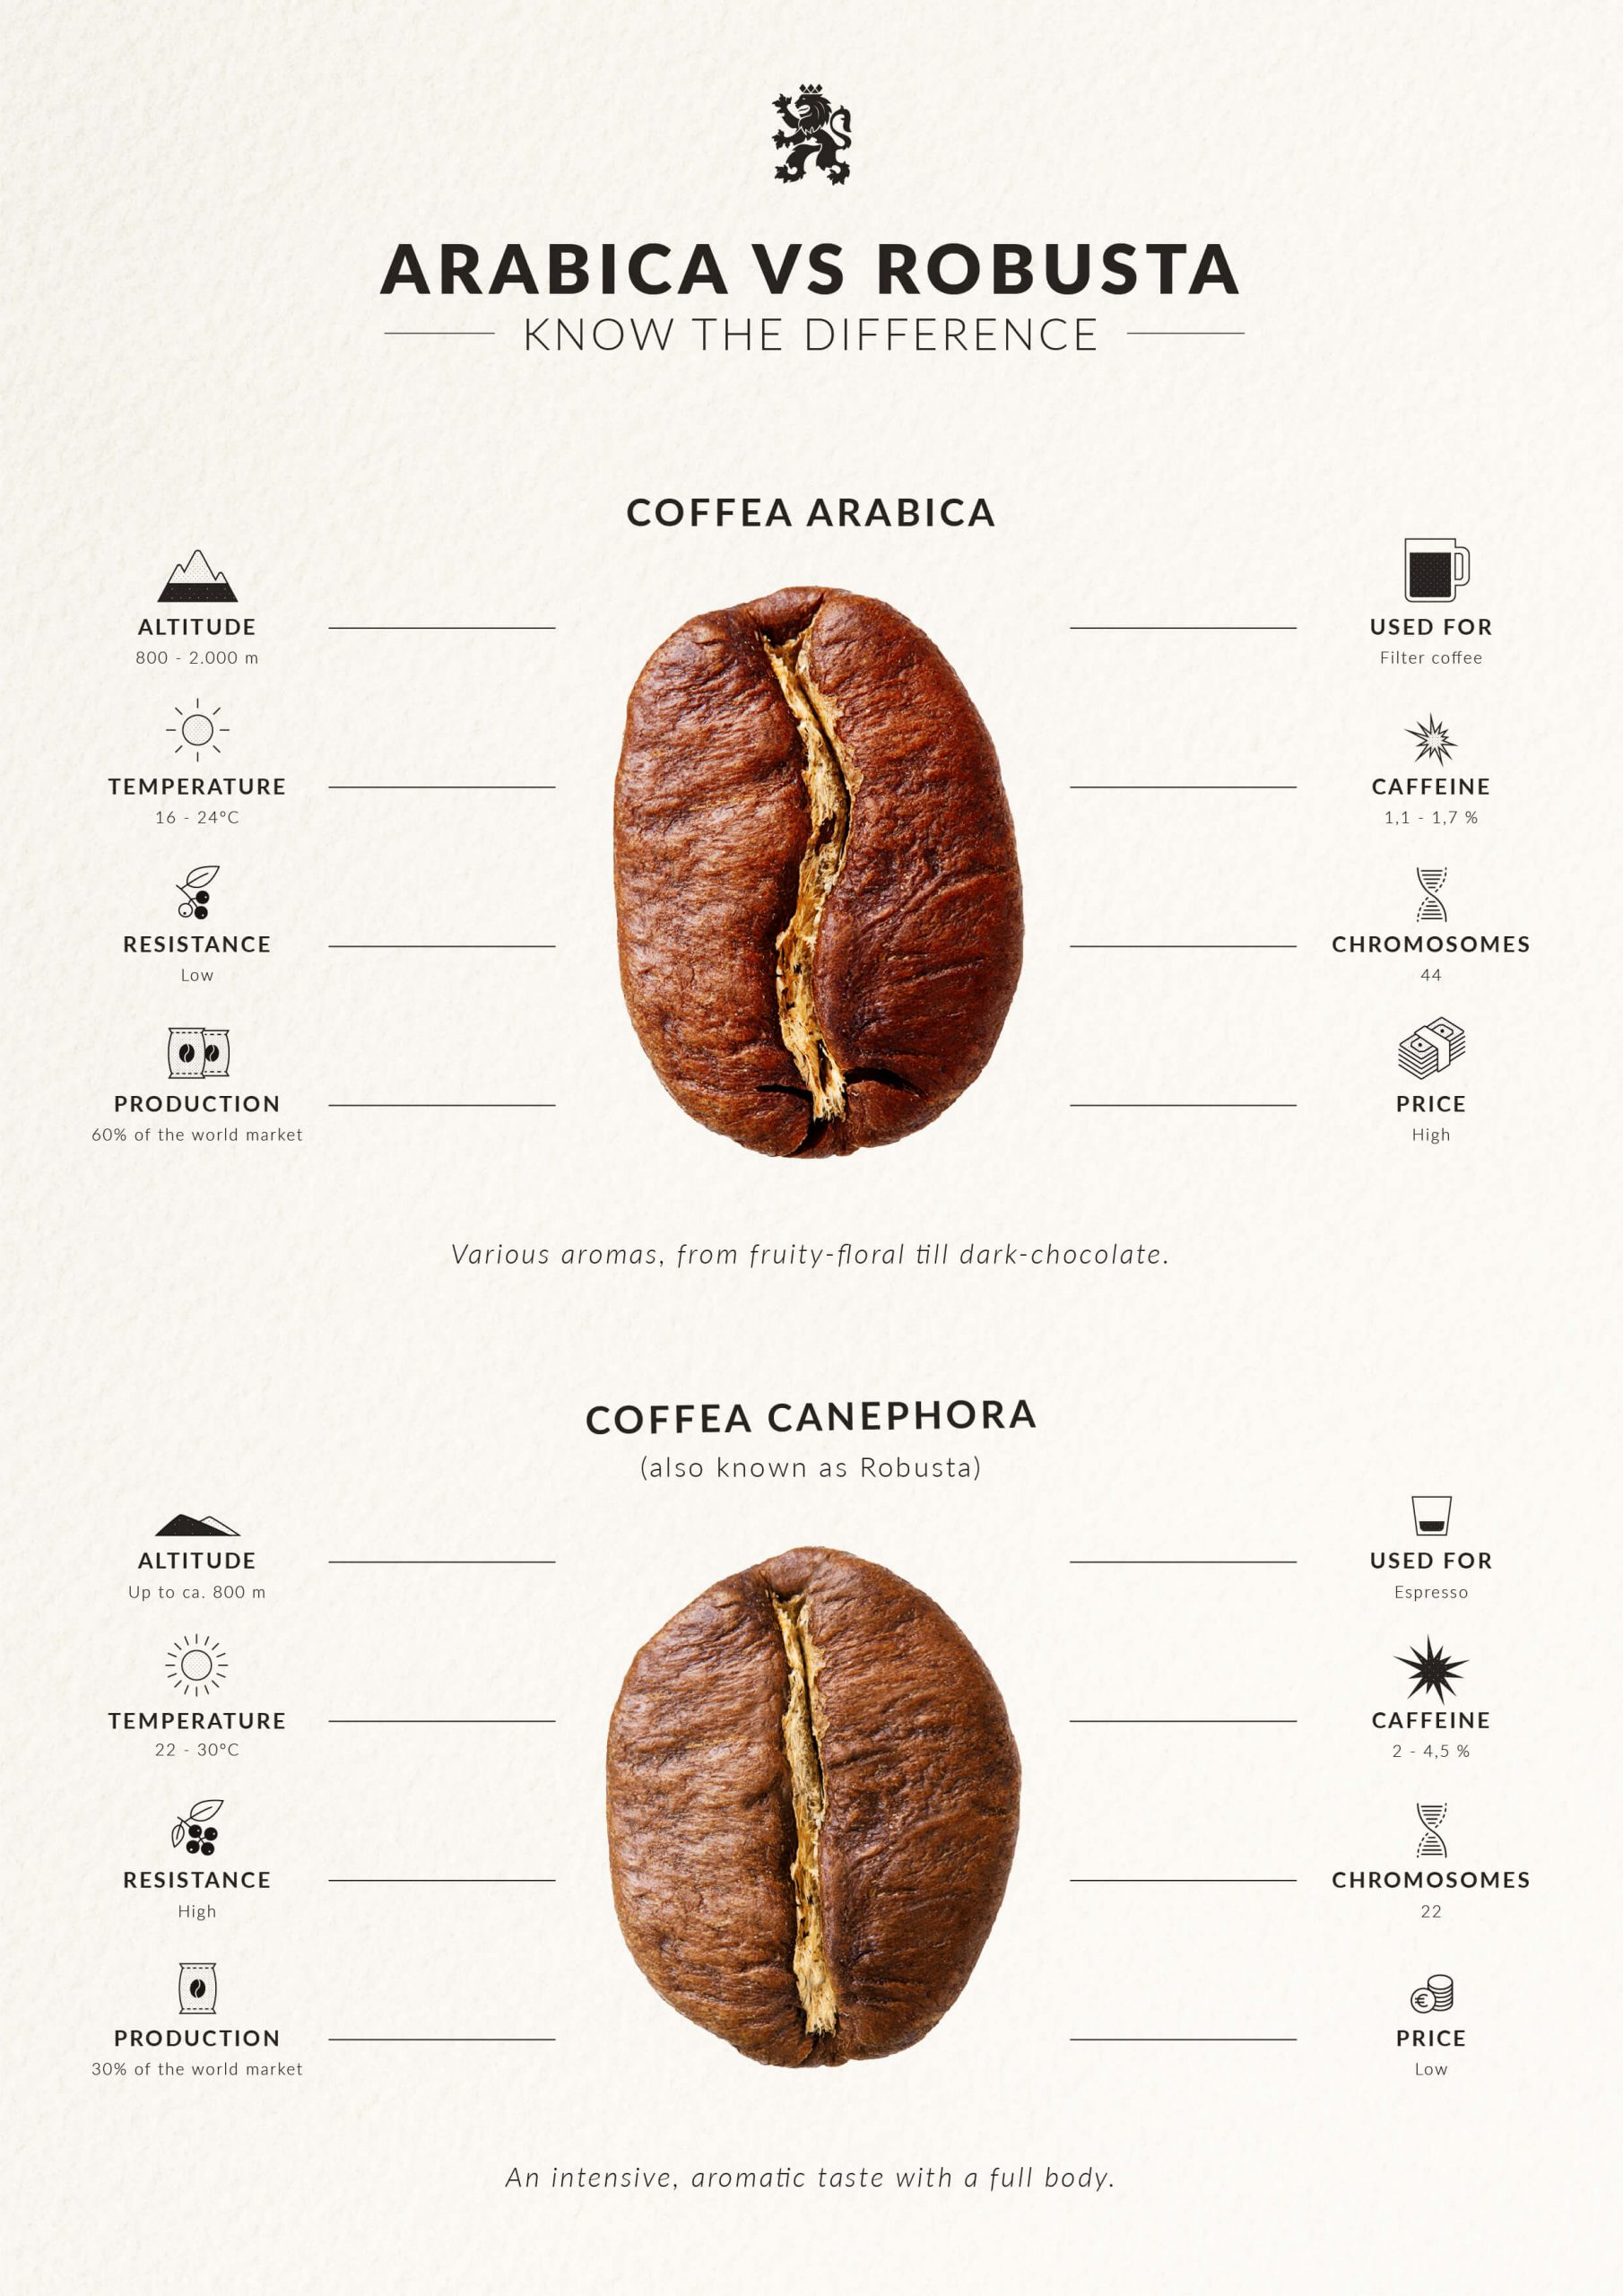 مقایسه دان قهوه عرییکا و روبوستا در یک نگاه